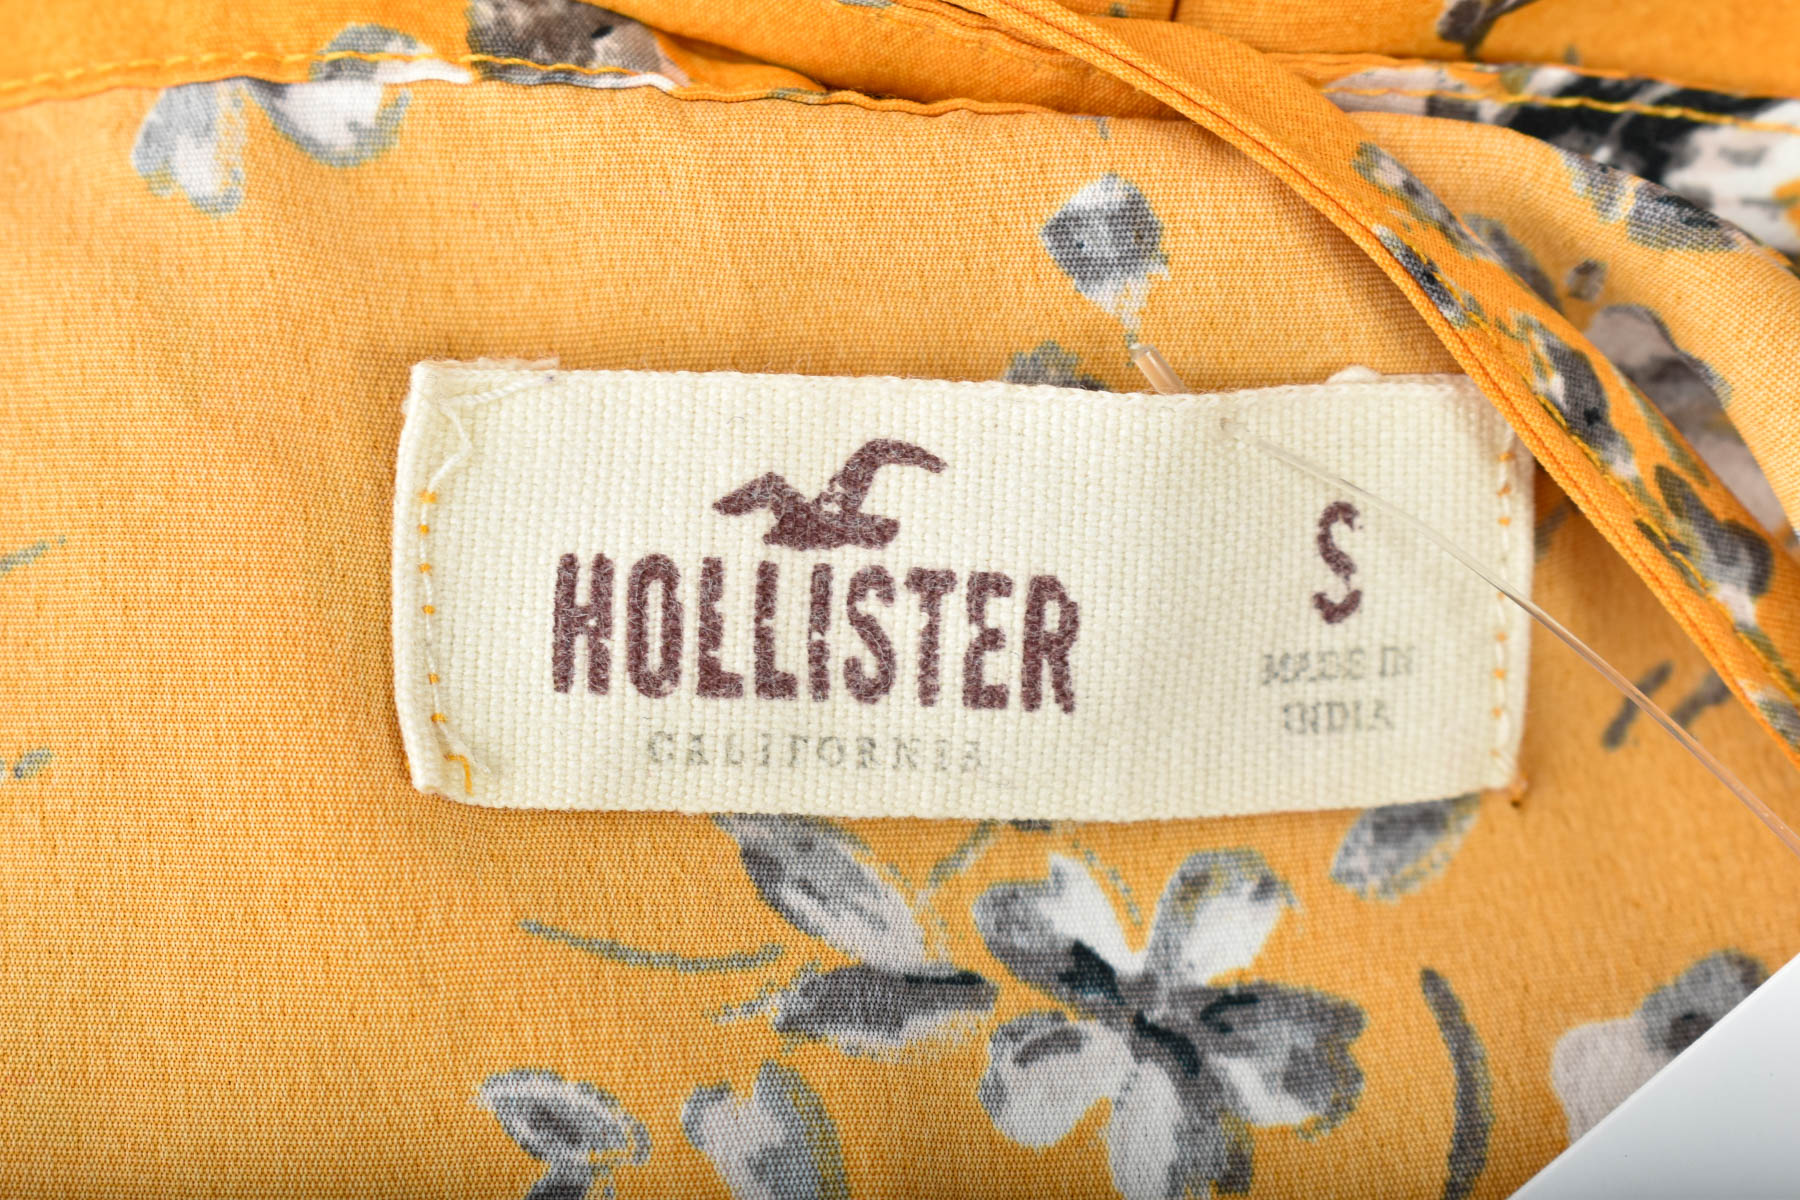 Women's shirt - Hollister - 2